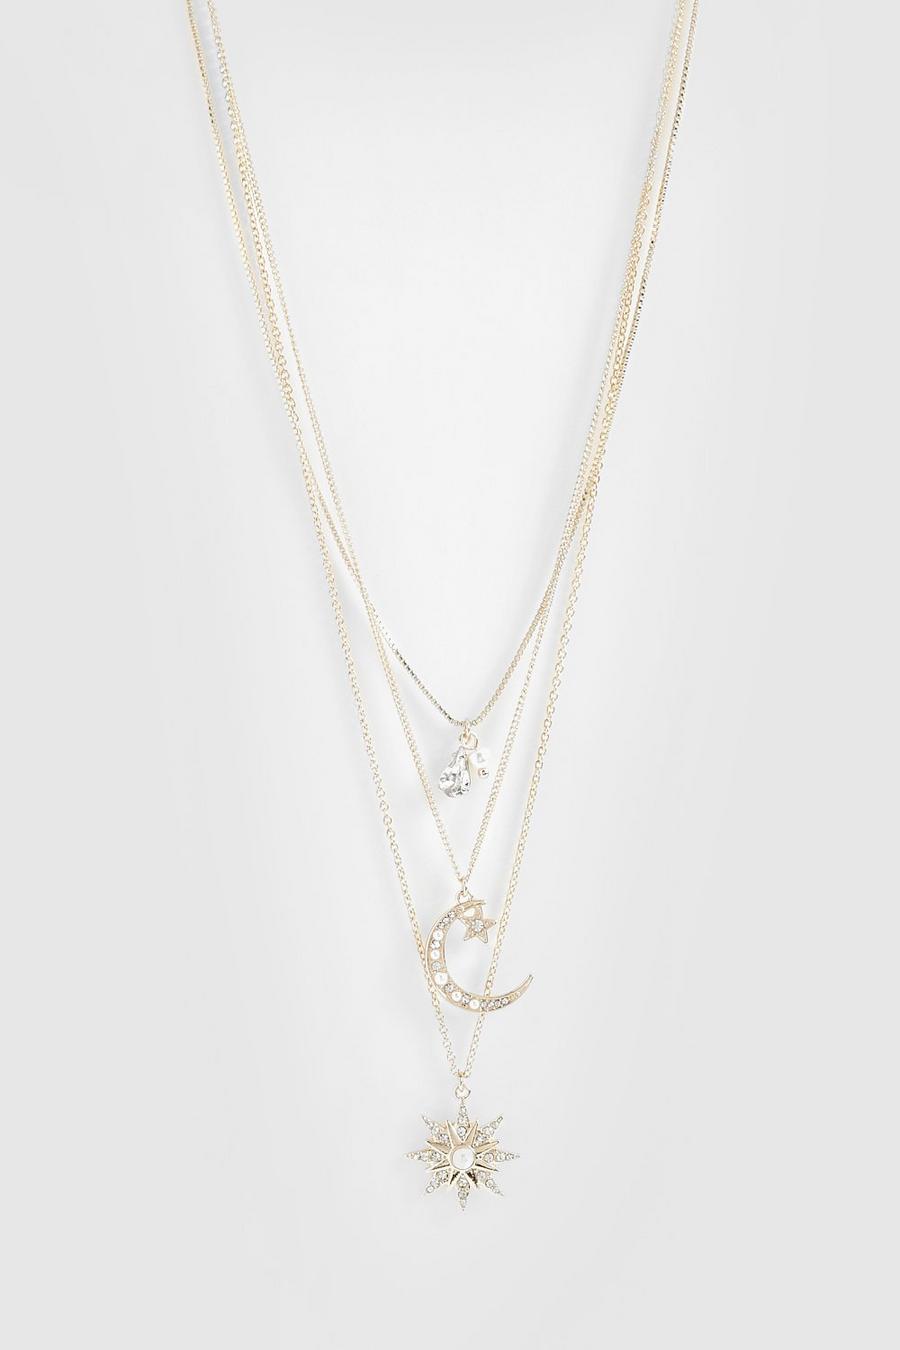 Celestial Moon & Star Embellished Layered Necklace | Boohoo UK